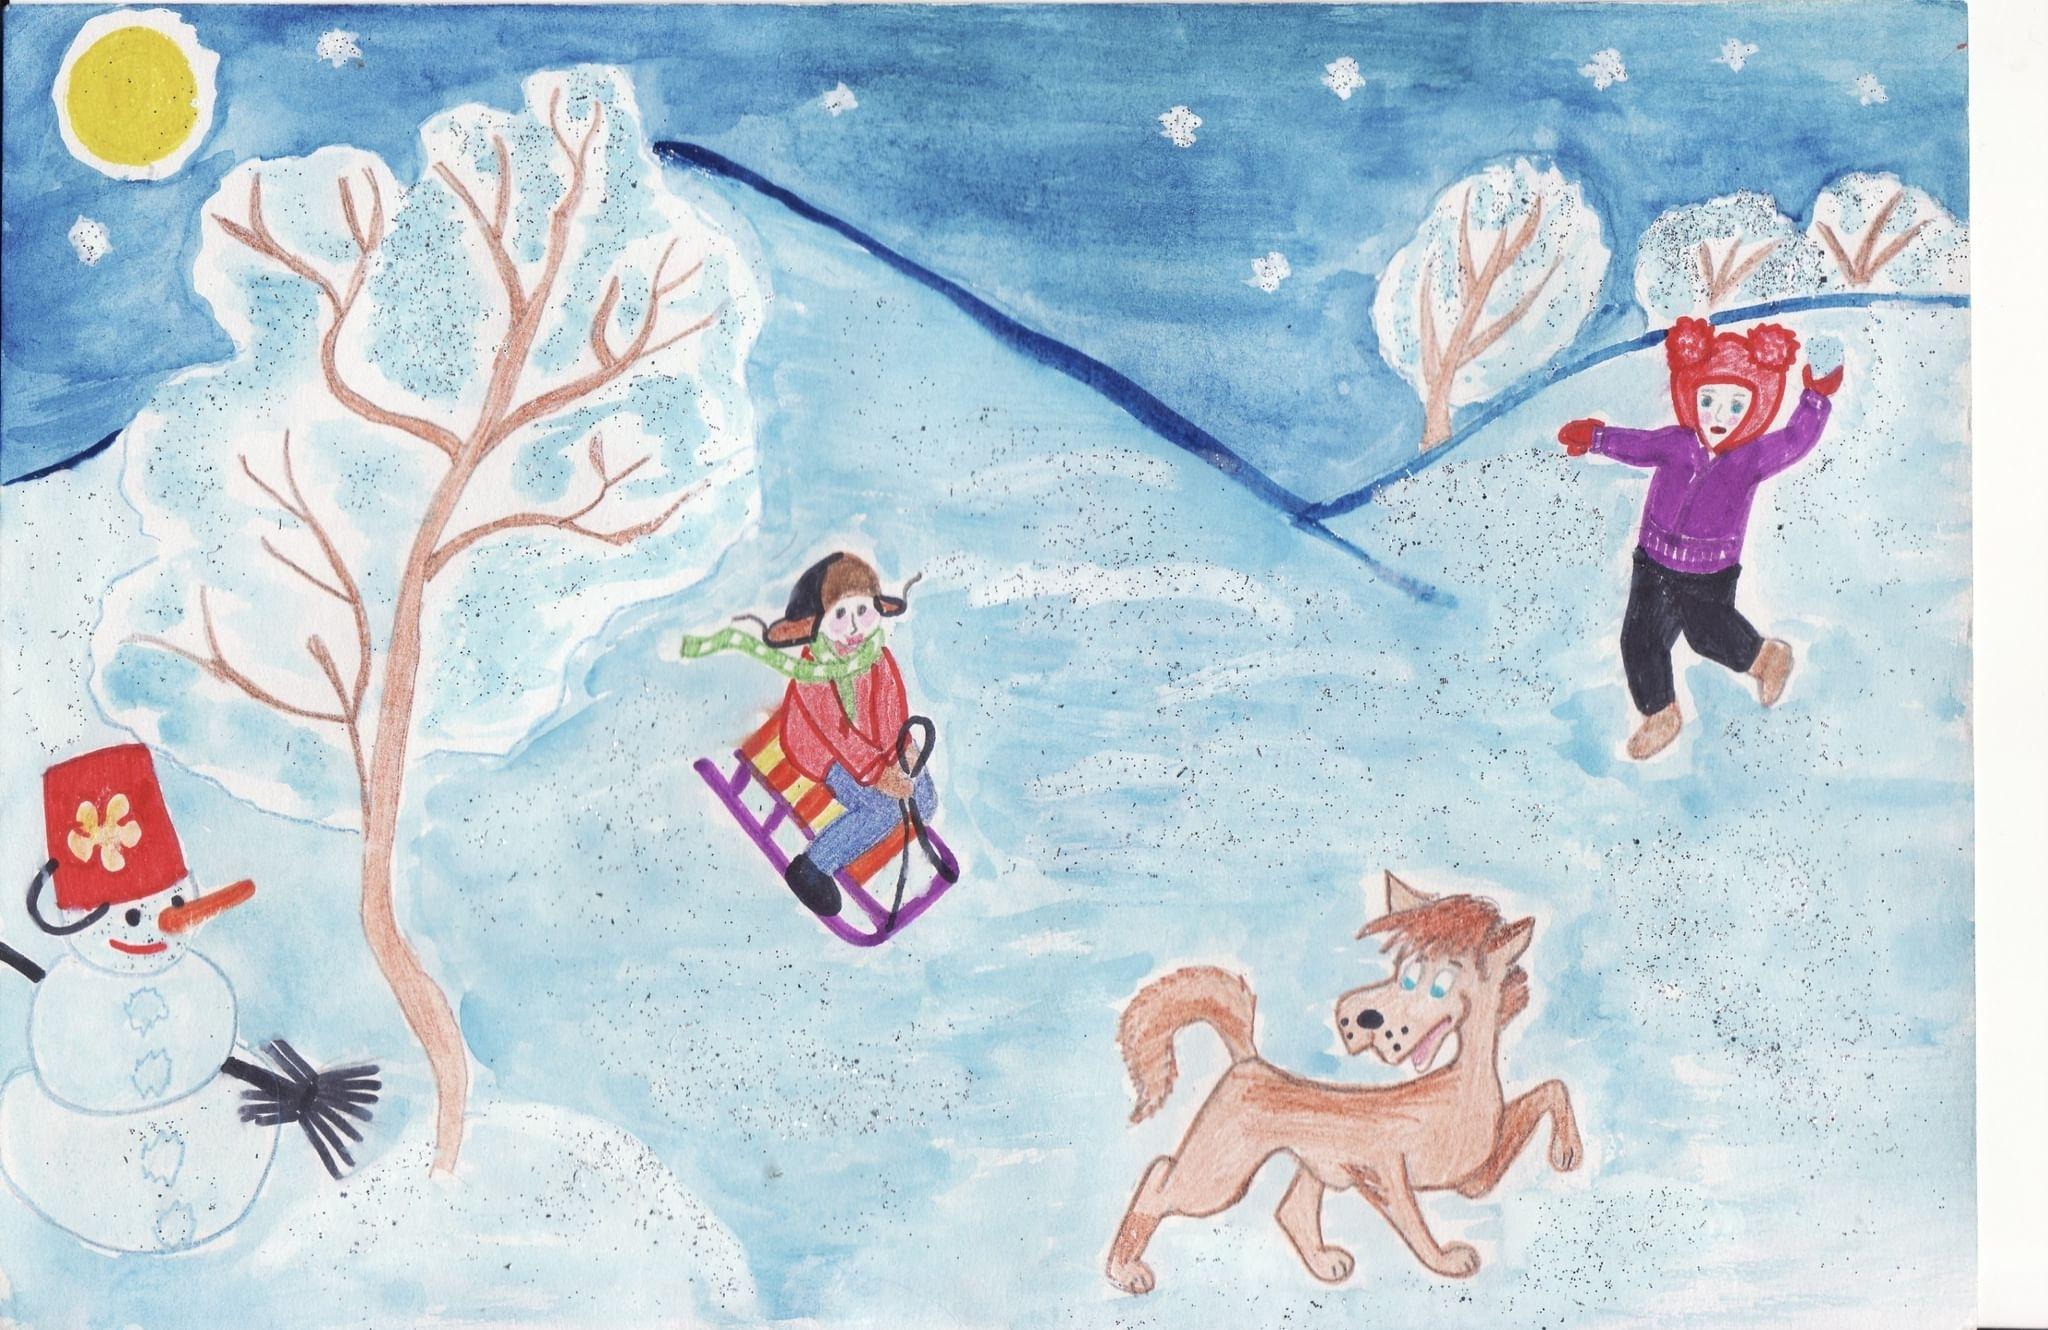 Здравствуй, зимушка-зима!» тема недели | Муниципальное автономное  дошкольное образовательное учреждение Детский сад №40 города Челябинска